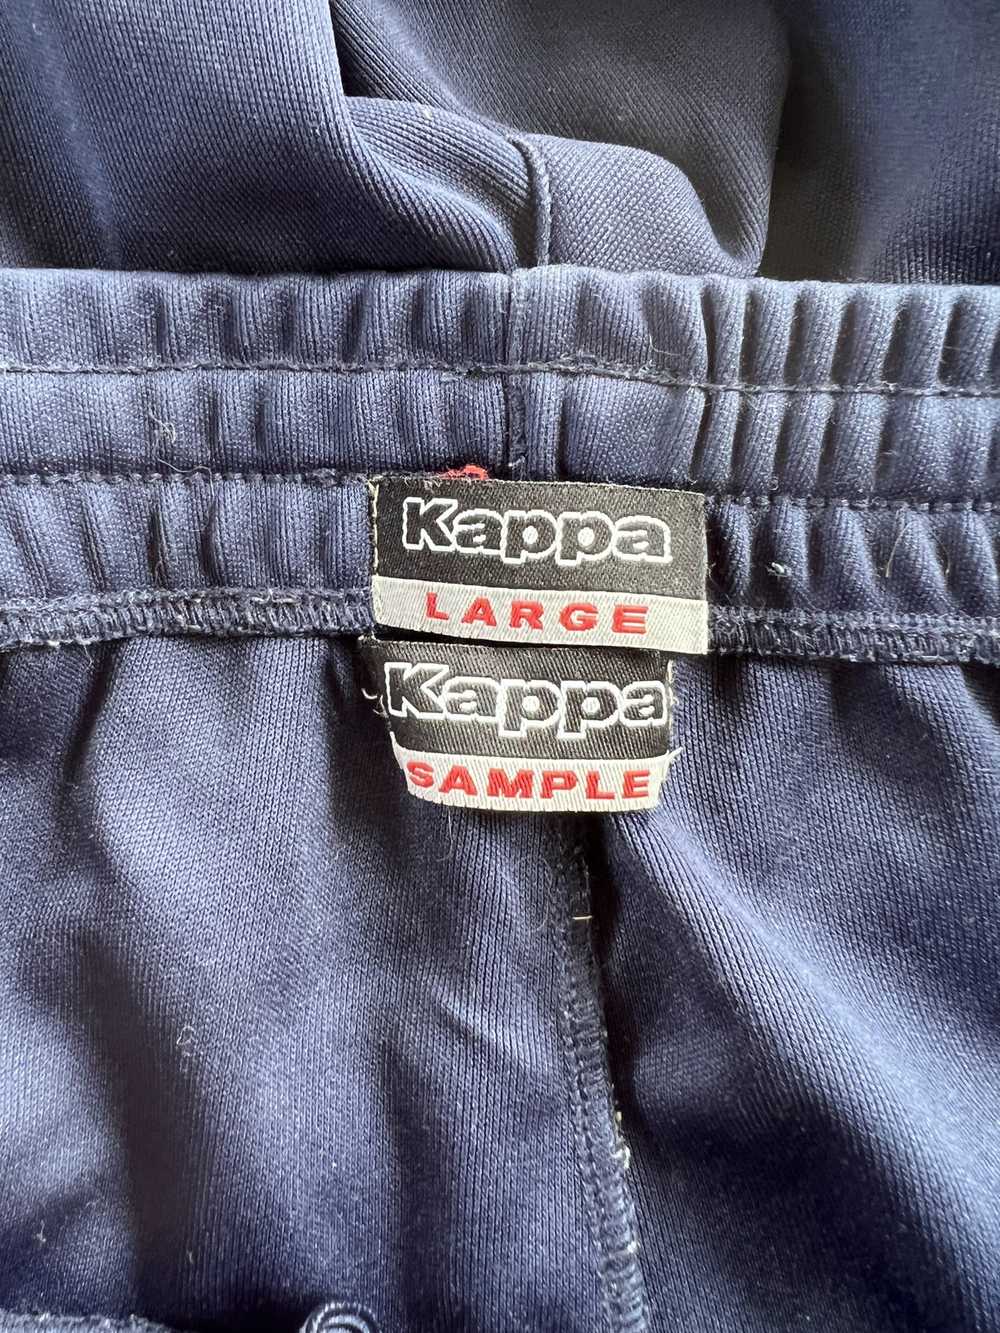 Kappa Kappa Sample track pants - image 2